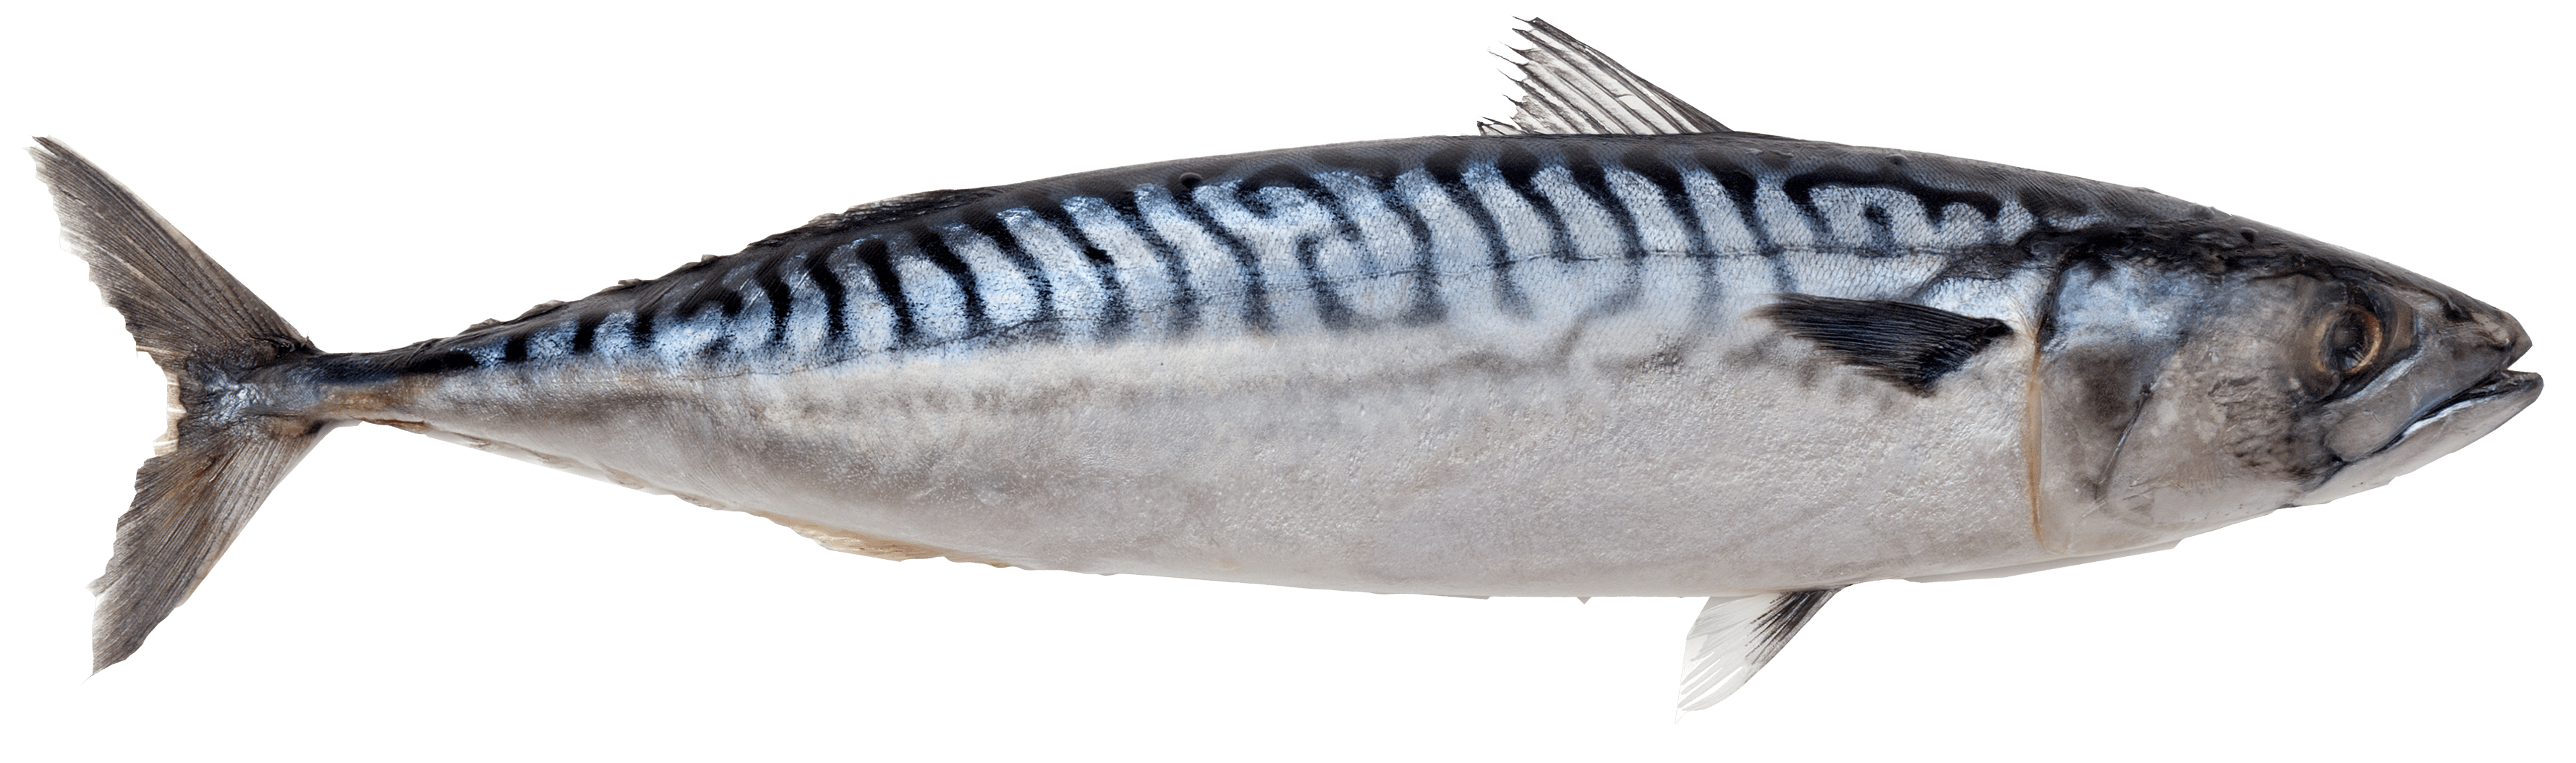 Scomber scombrus. Atlantic mackerel. Atlantic mackerel